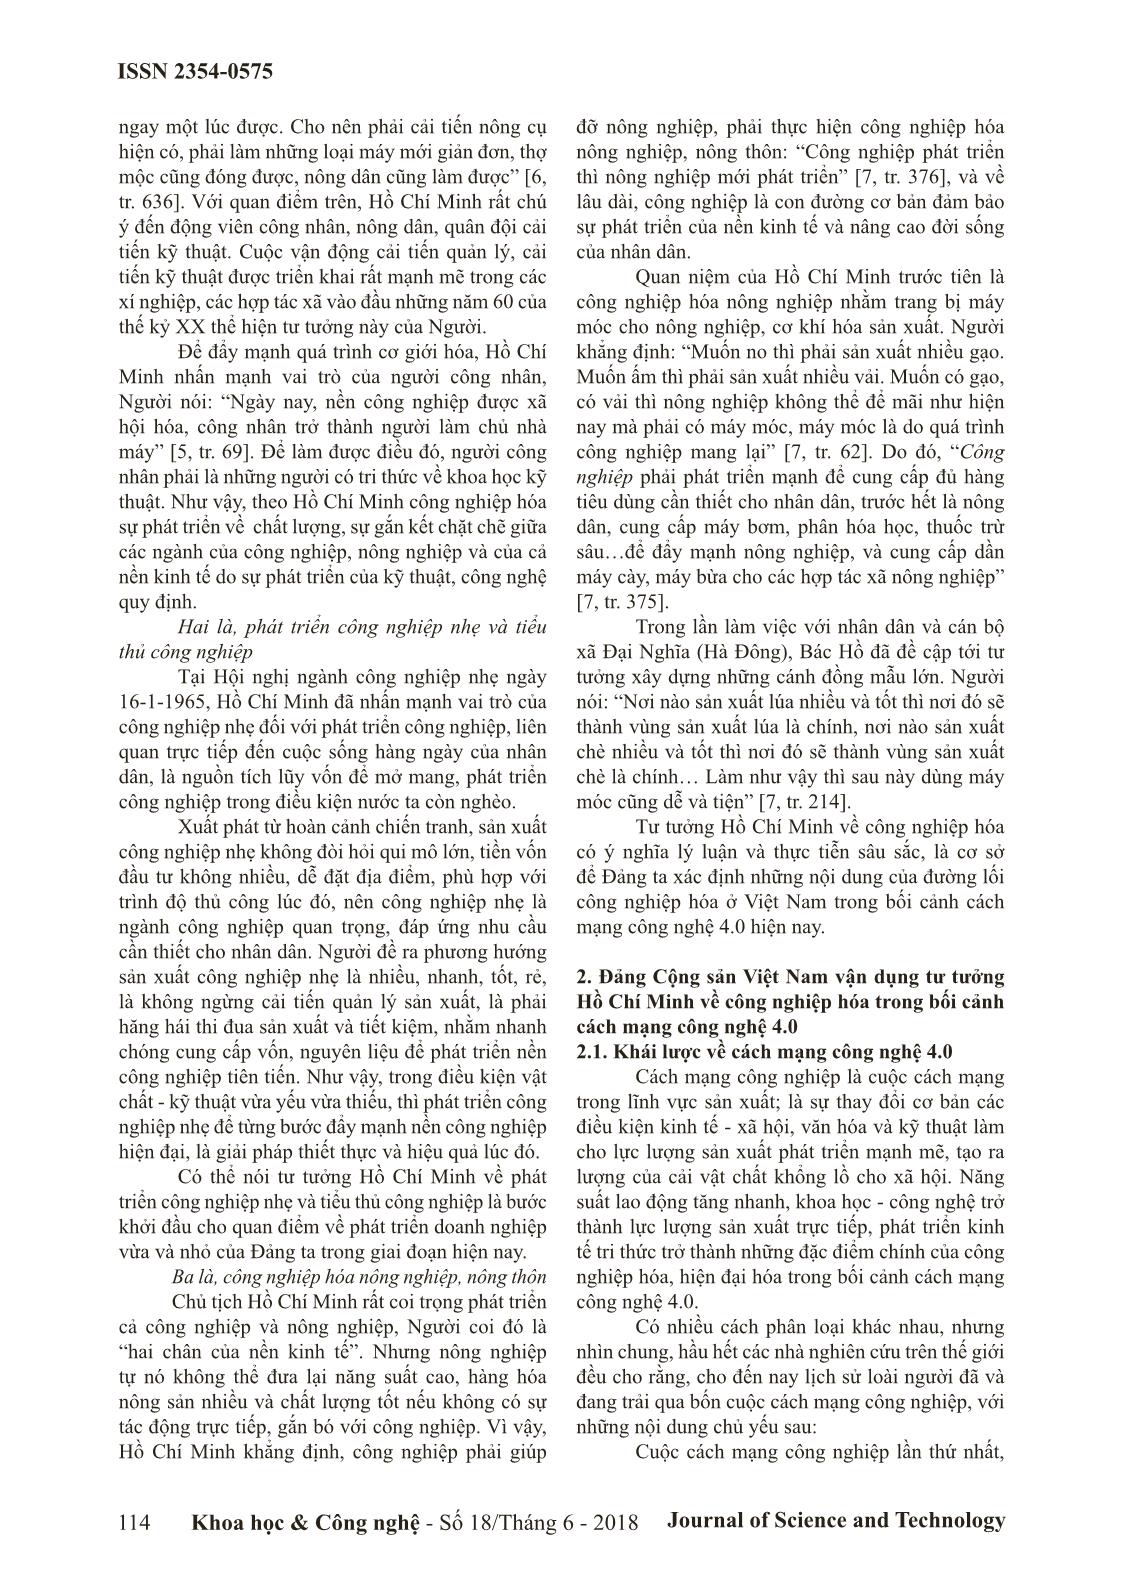 Đảng Cộng sản Việt Nam vận dụng tư tưởng Hồ Chí Minh về công nghiệp hóa trong bối cảnh cách mạng công nghệ 4.0 trang 2